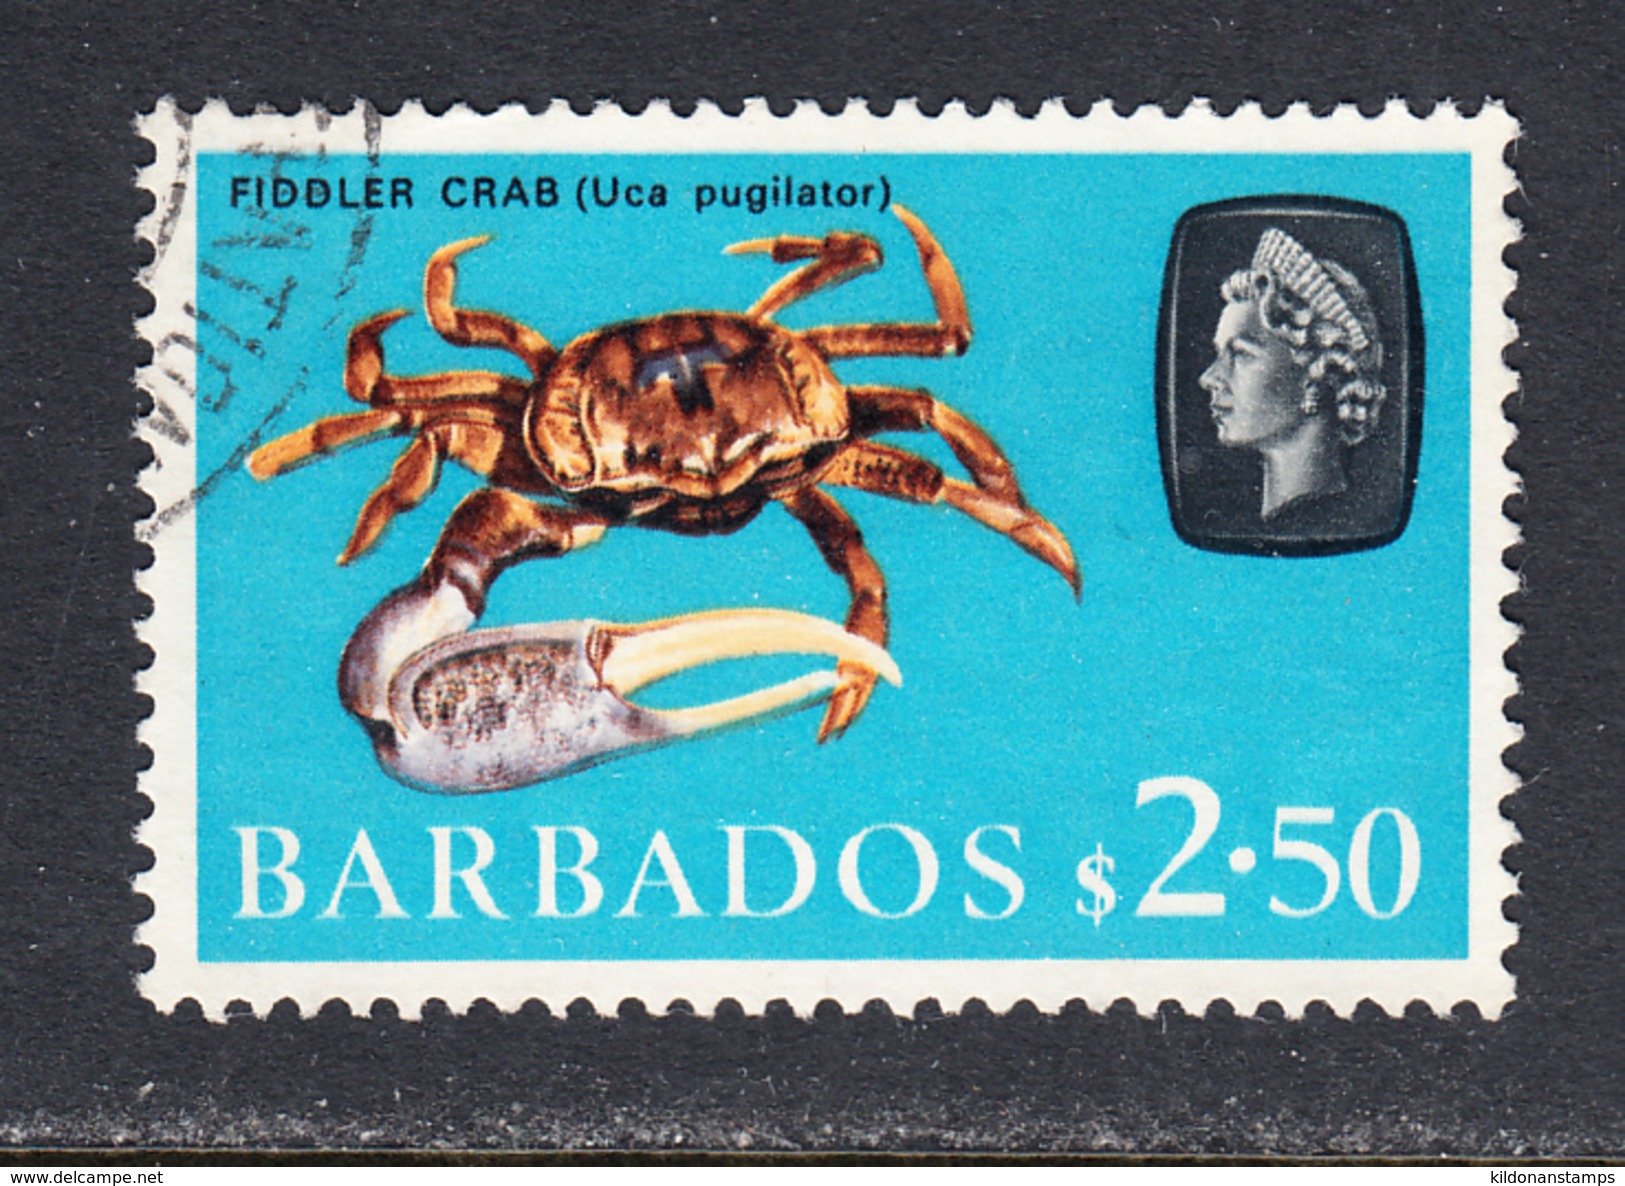 Barbados 1966-69 Cancelled, Wmk 12 Sideways, Sc# 280 , SG 355 - Barbades (1966-...)